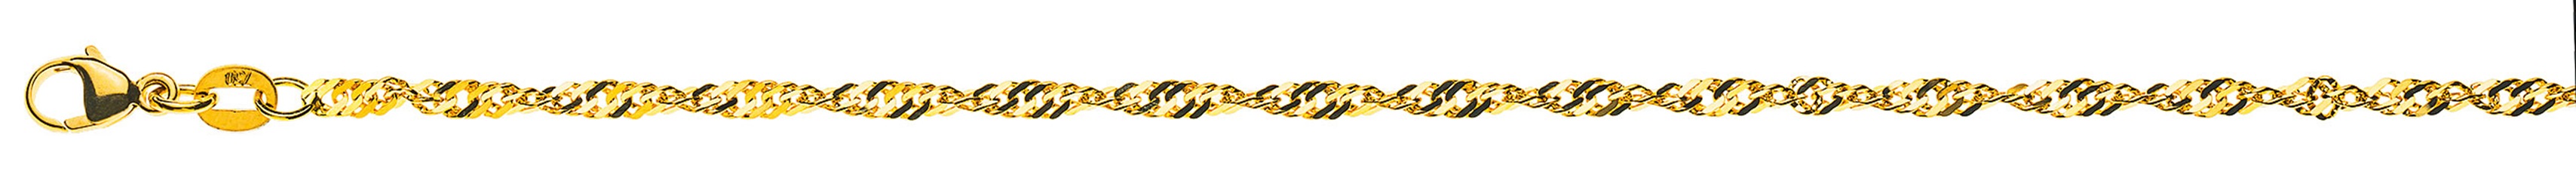 AURONOS Prestige Necklace Yellow Gold 18K Singapore Chain 50cm 2.4mm